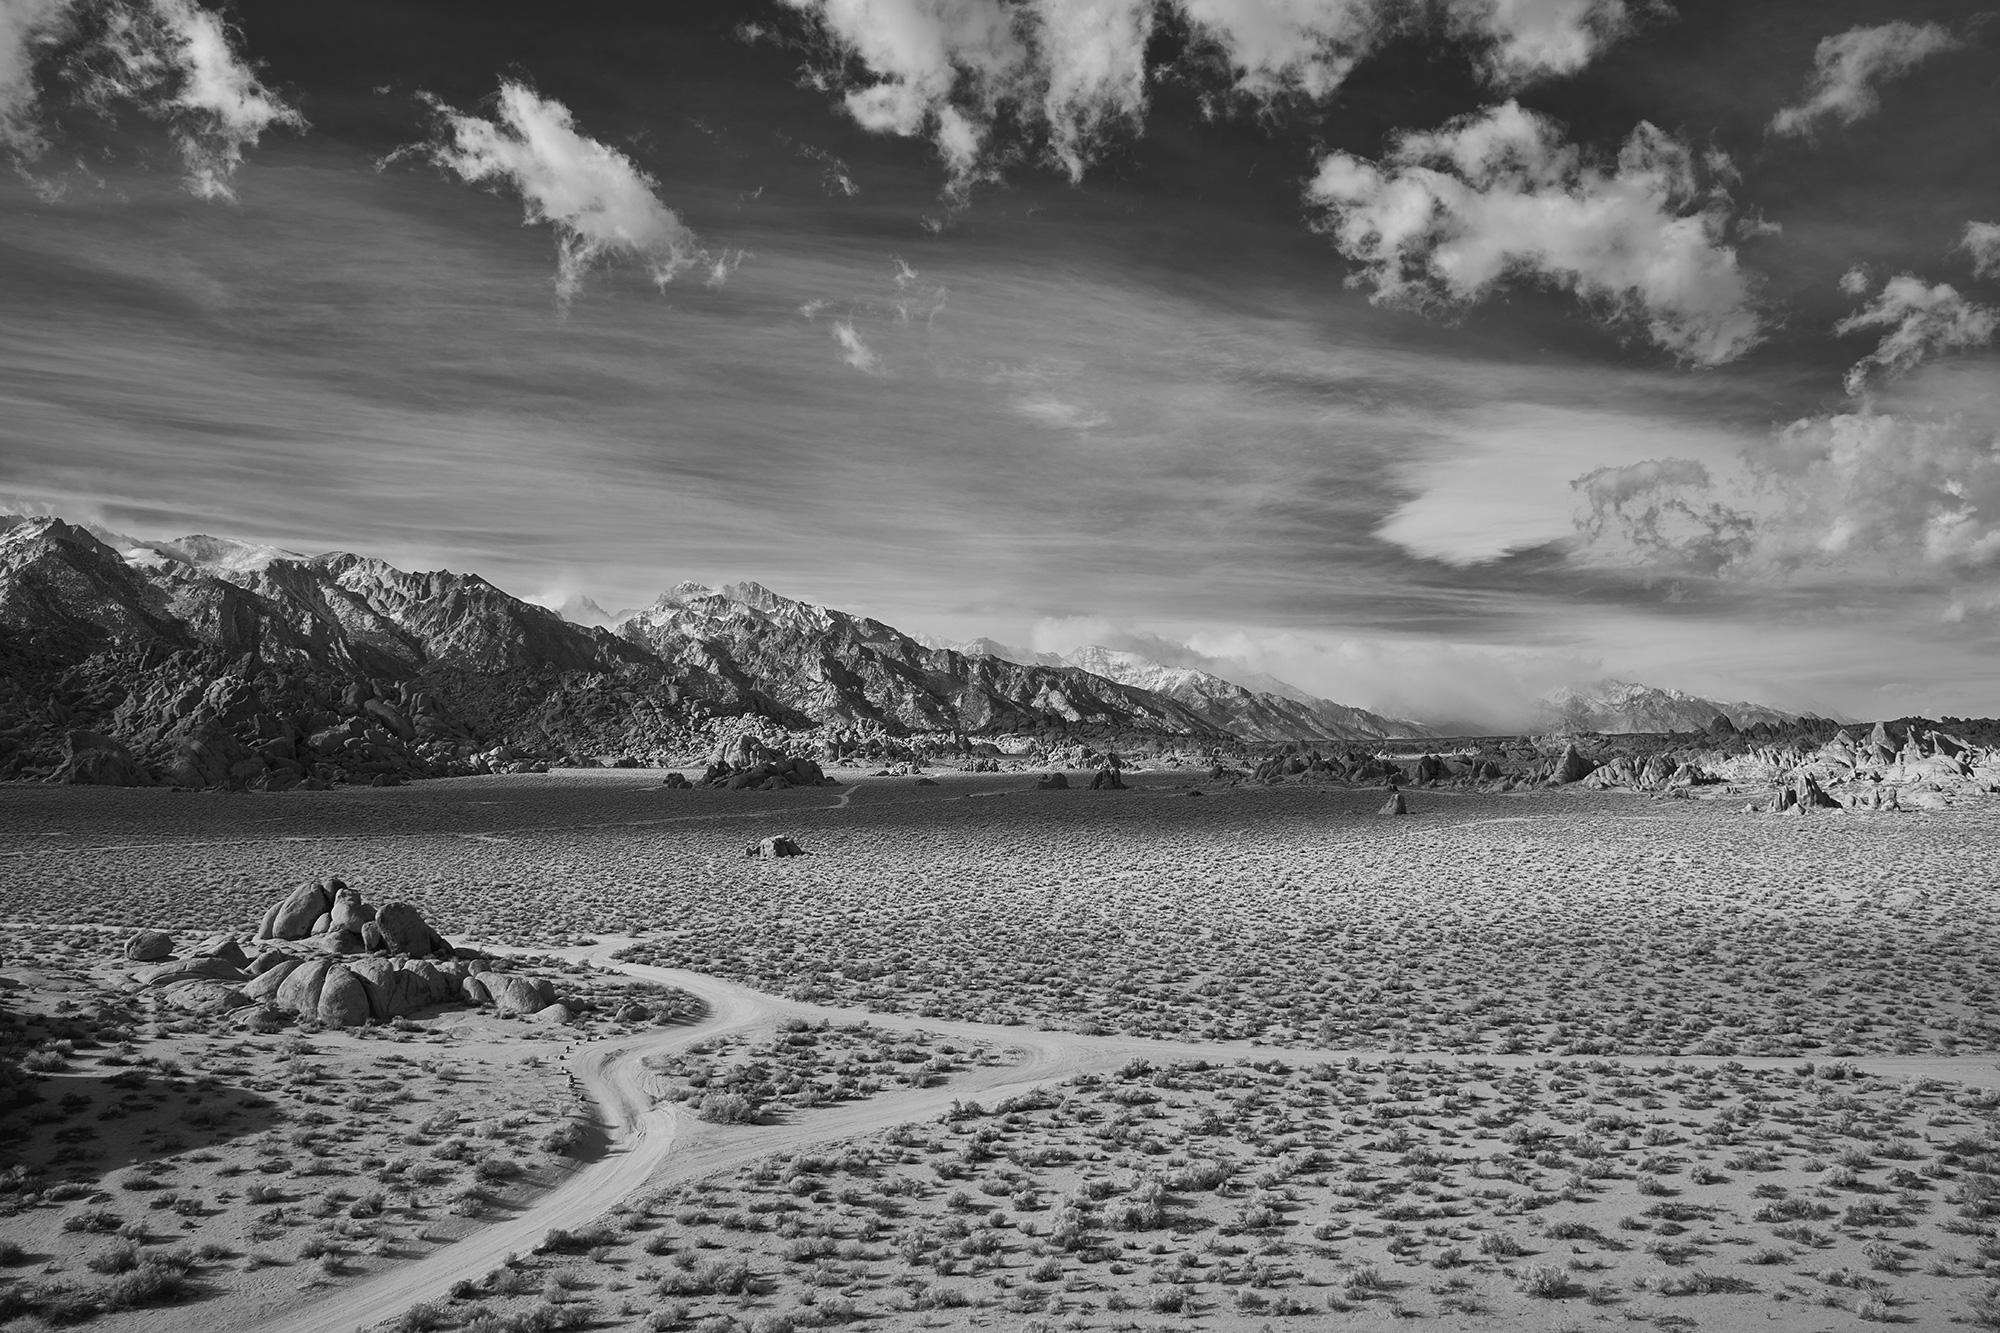 Desert Crossing – großformatiges Schwarz-Weiß-Foto einer dramatischen Wüstenlandschaft – Photograph von Frank Schott